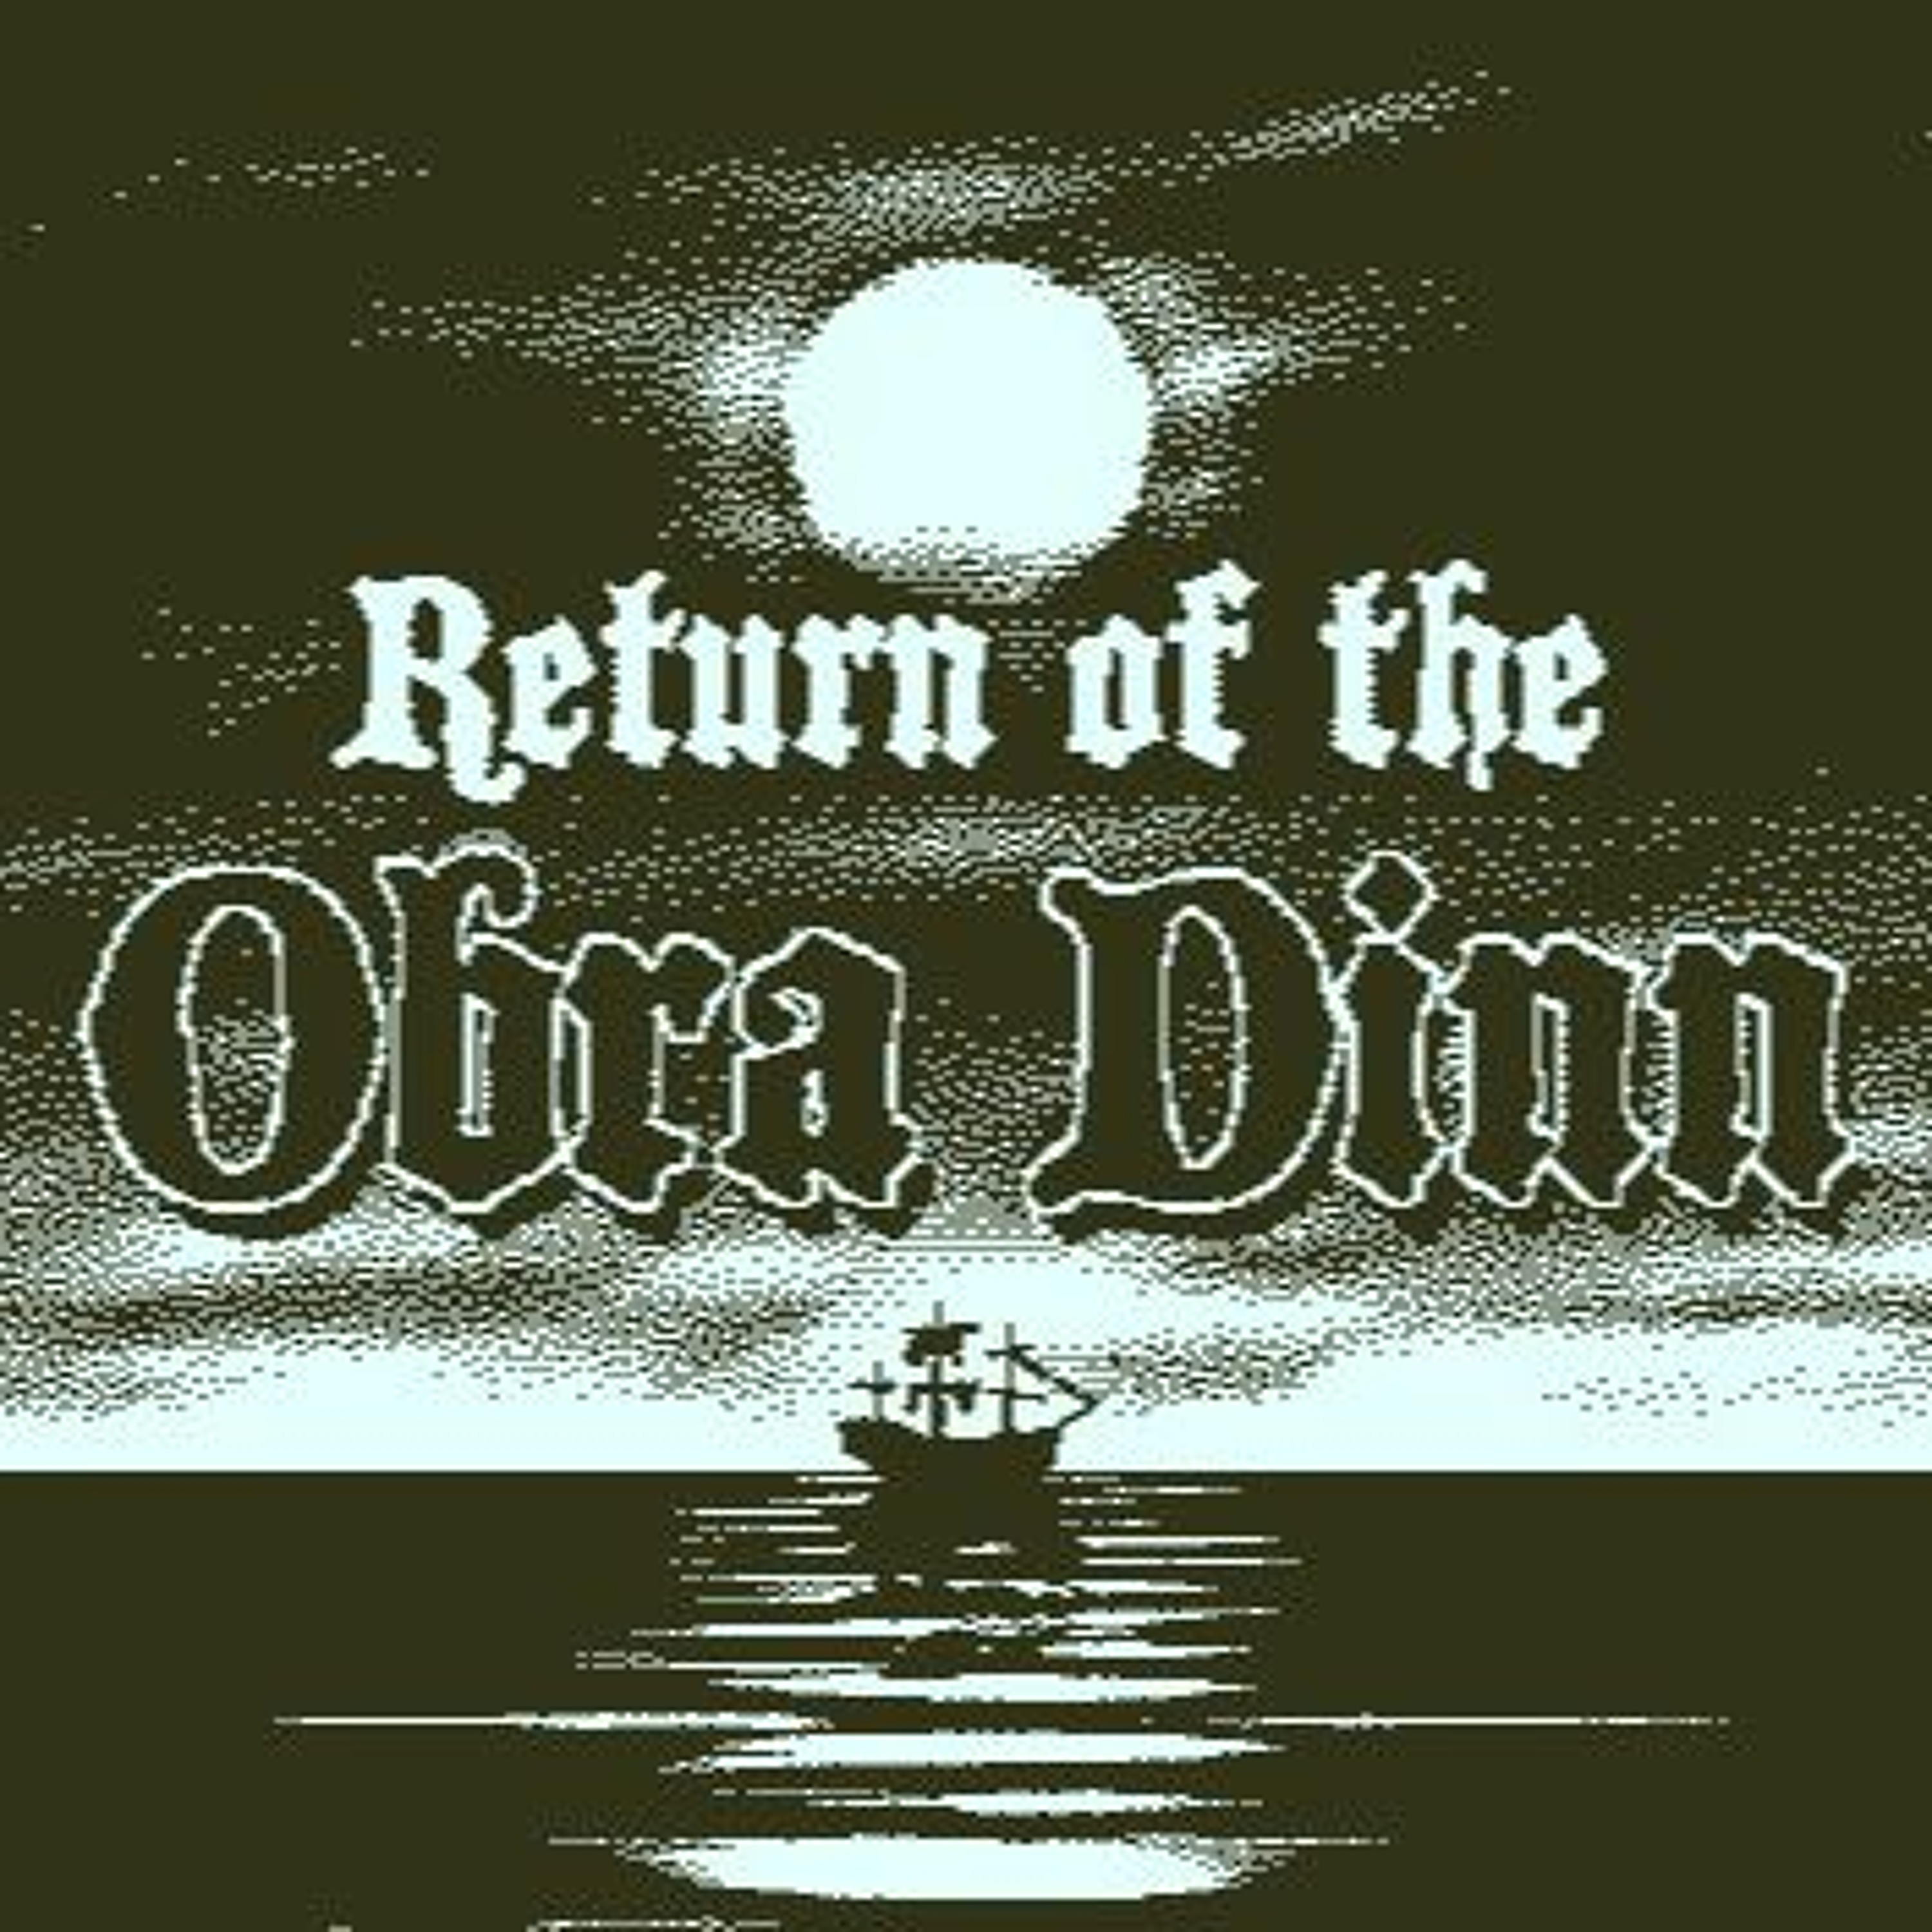 Episode 55: Return of the Obra Dinn